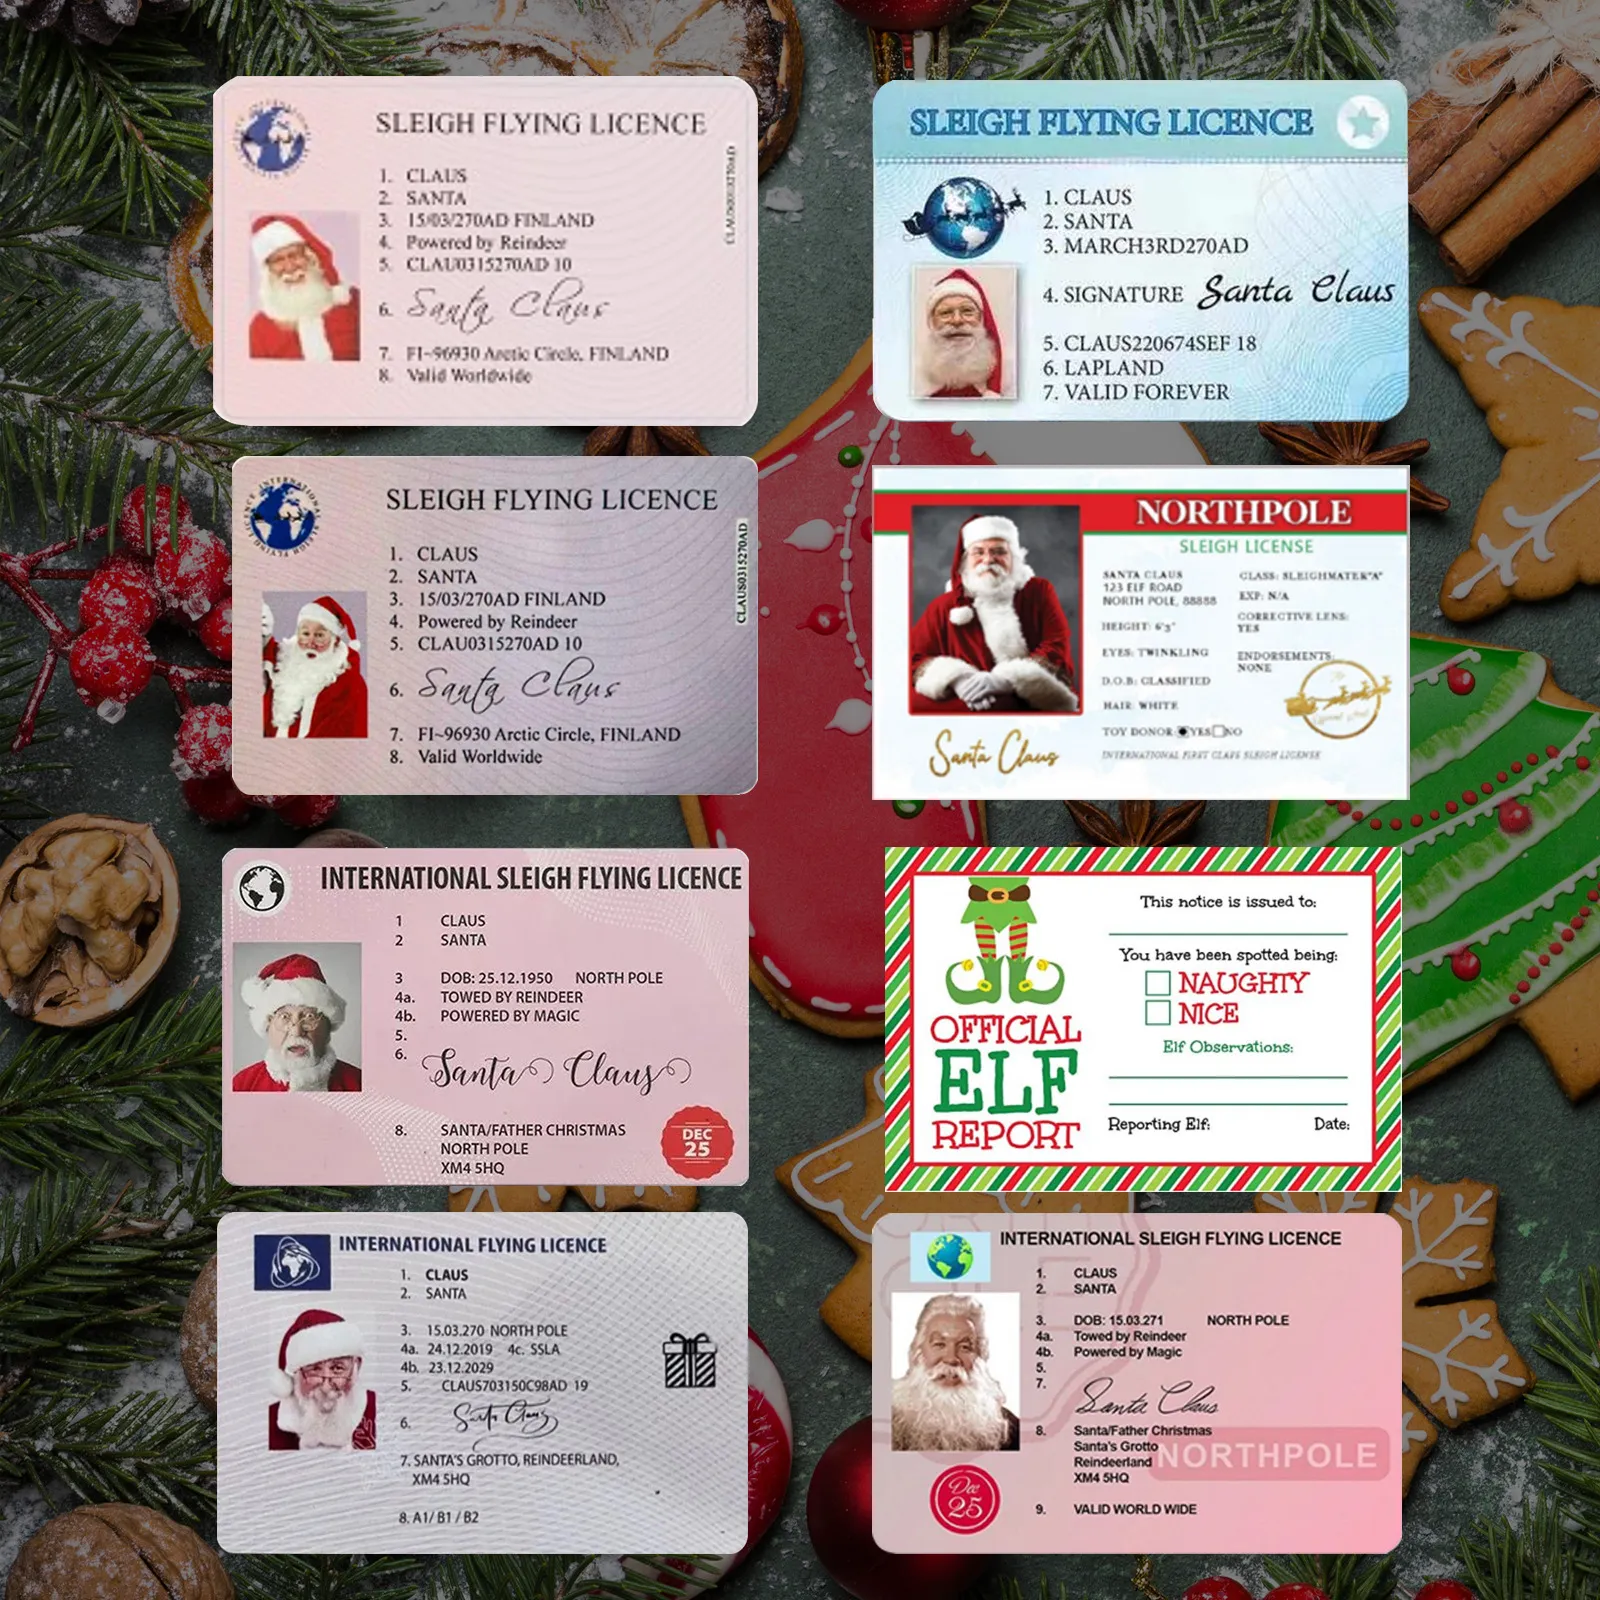 クリスマスギフトサンタクロースフライトカードそりライディングライセンスツリー飾りクリスマスデコレーション老人ドライバーライセンスエンターテインメント小文字の新年の願い